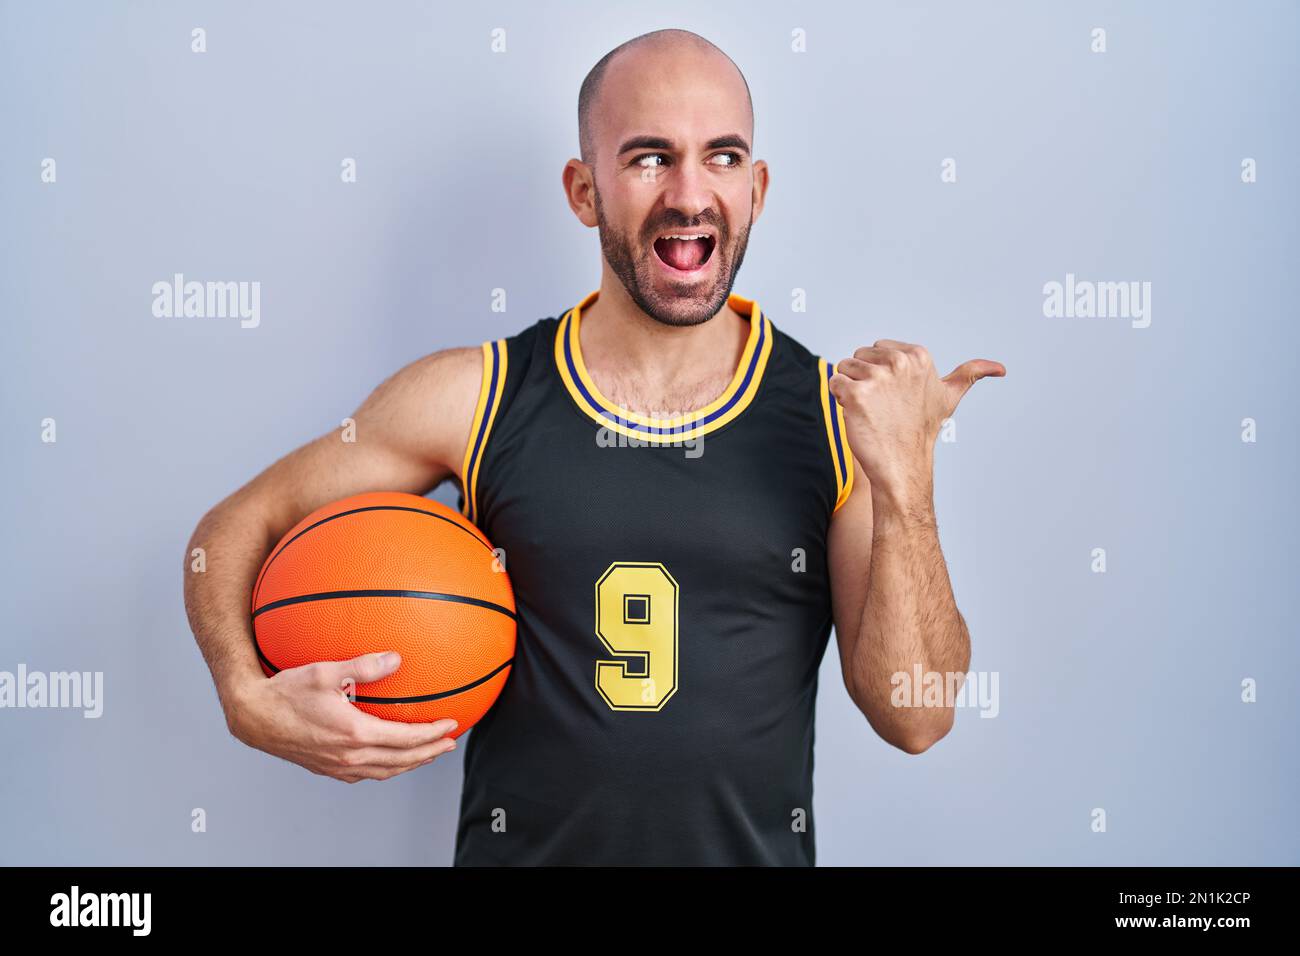 Jeune homme chauve avec barbe portant un uniforme de basket-ball tenant le  ballon souriant avec le visage heureux regardant et pointant vers le côté  avec le pouce vers le haut Photo Stock -